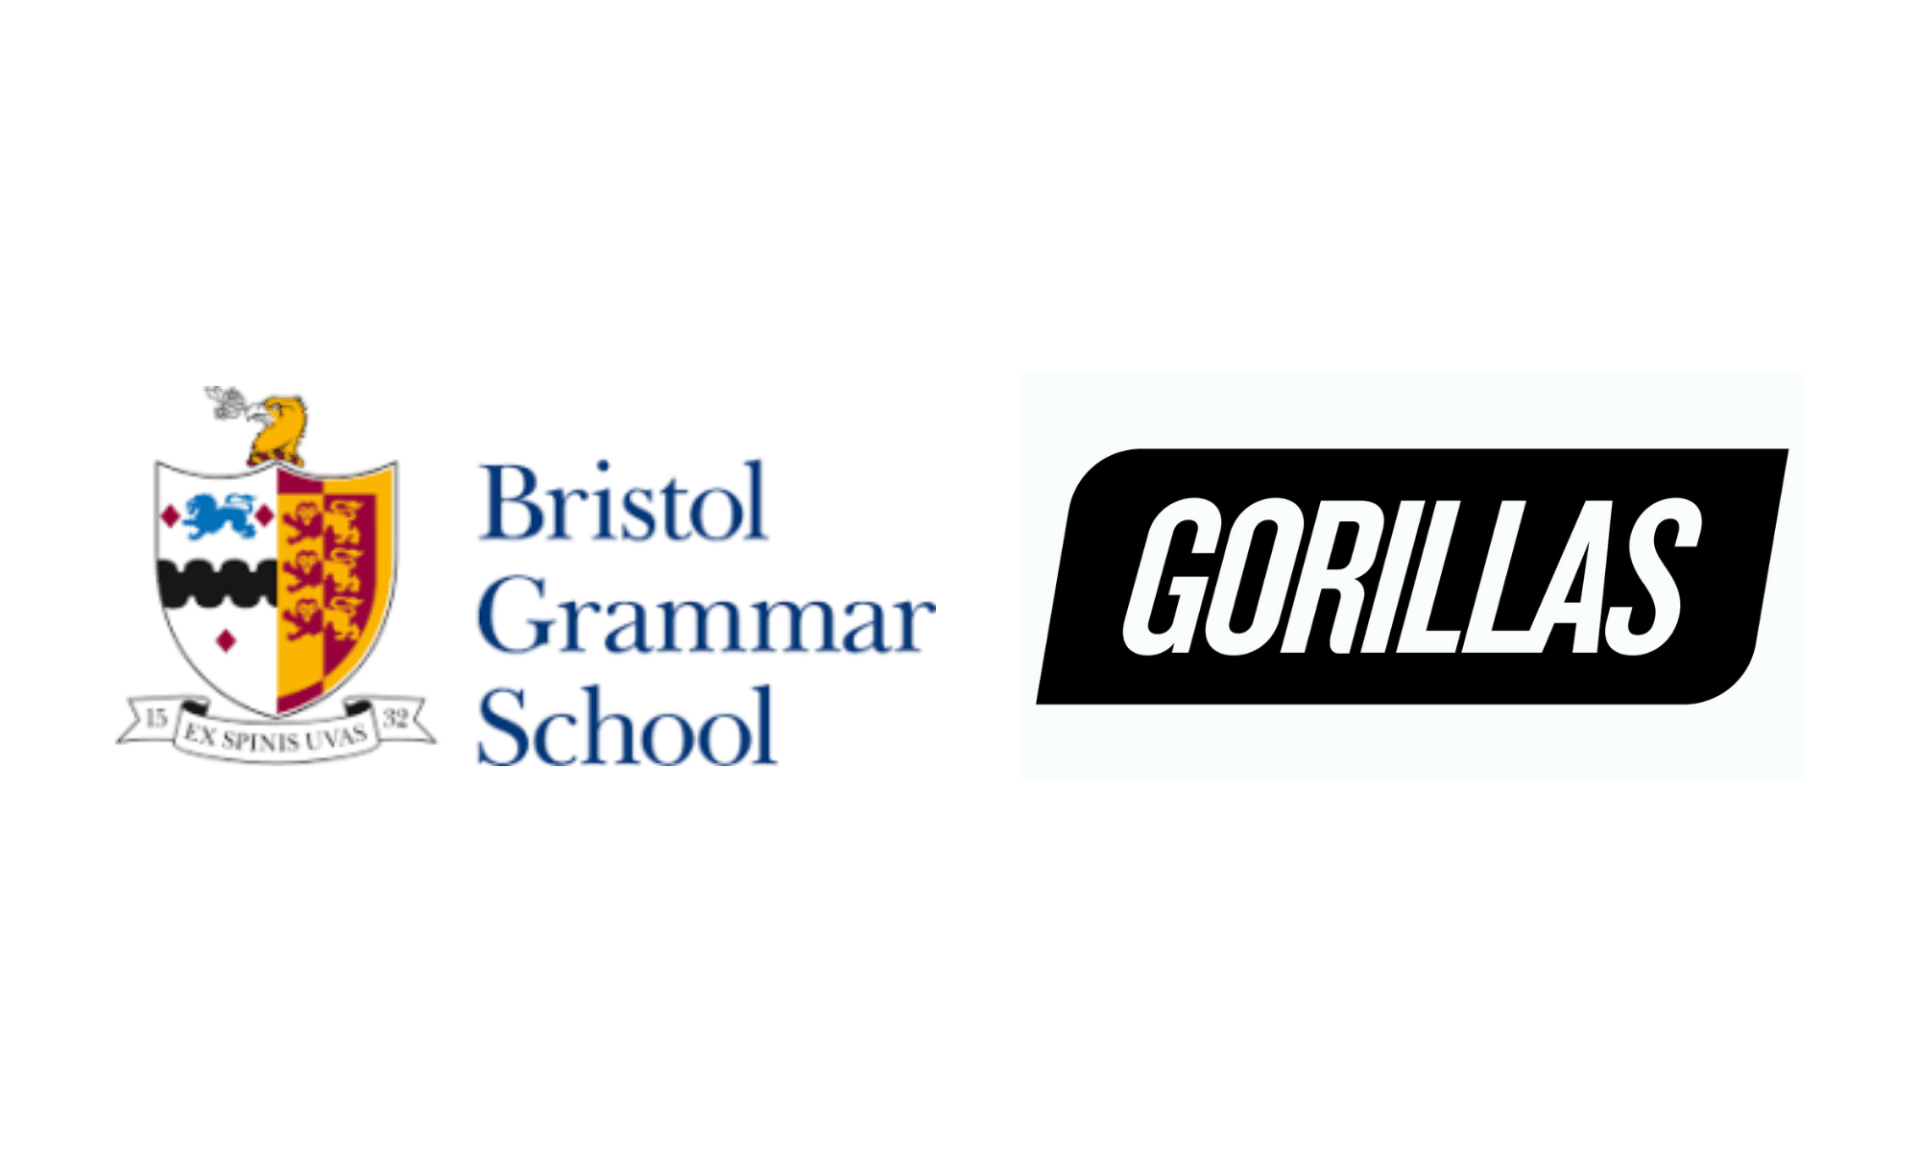 Bristol Grammar School, Gorillas (App)